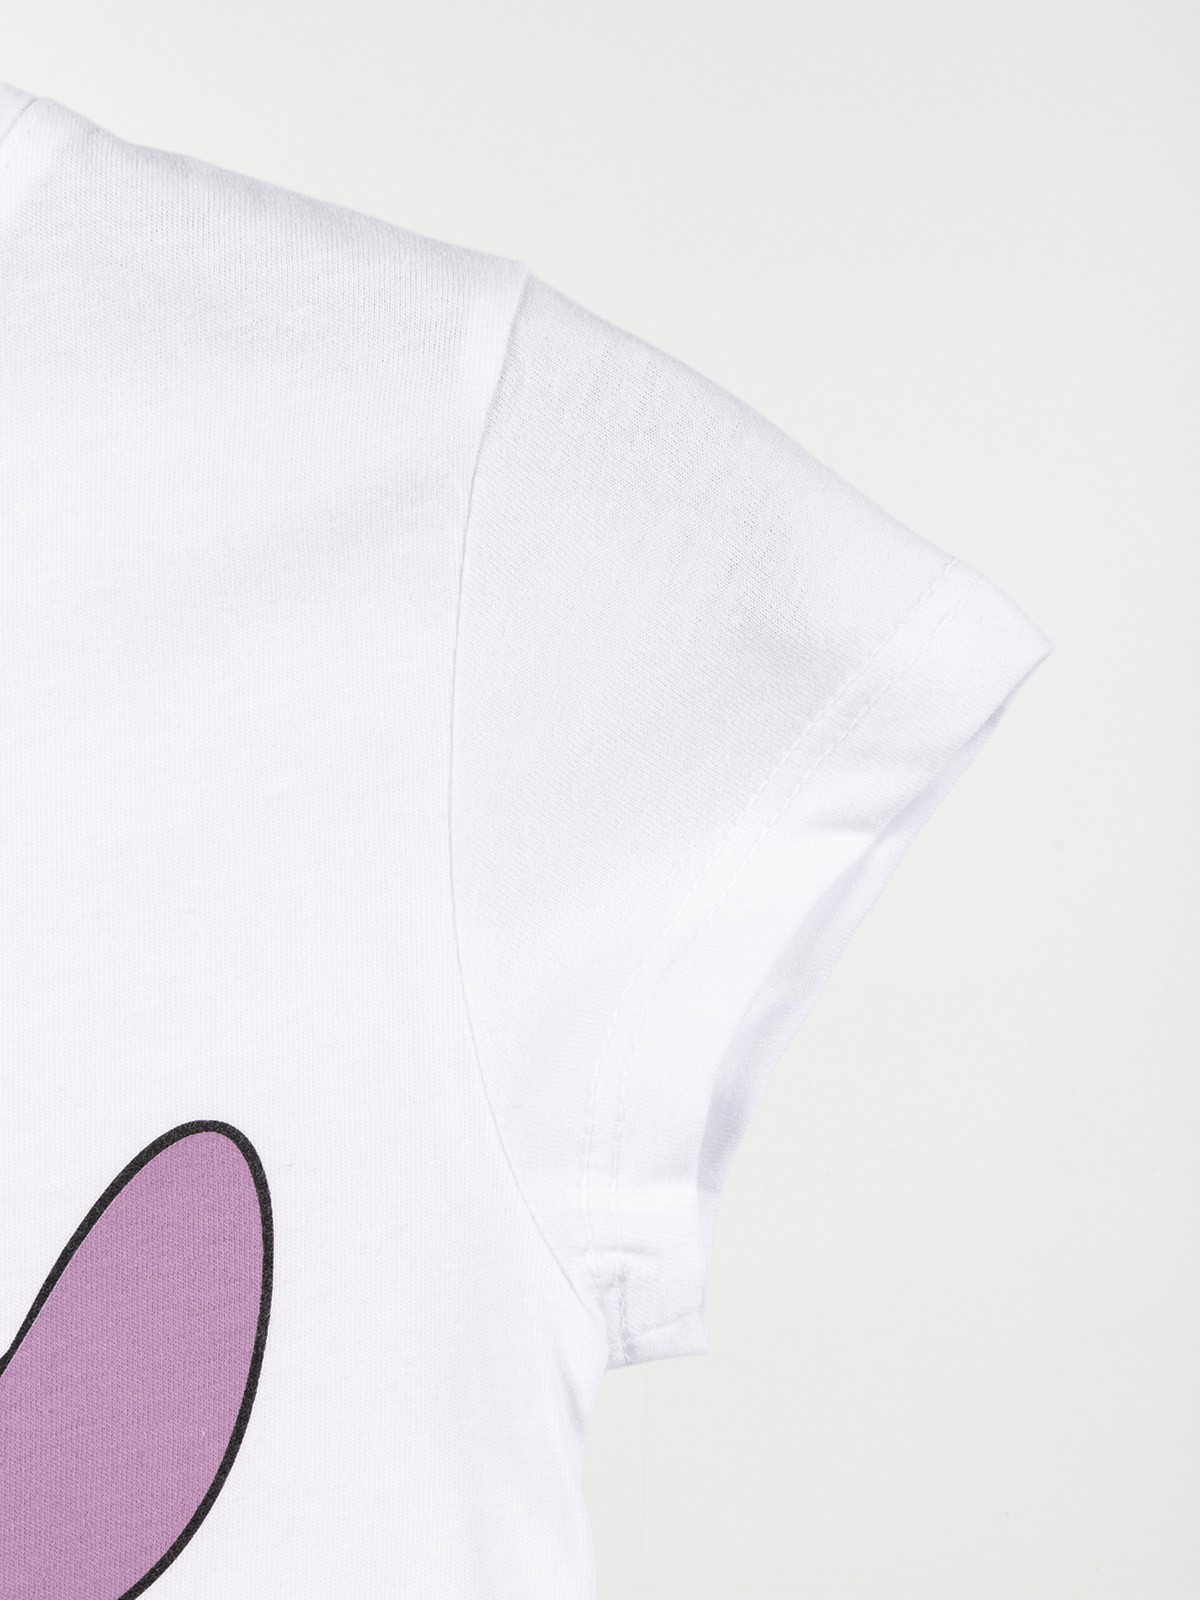 Tee-shirt fille Stitch blanc (3-8A) - DistriCenter